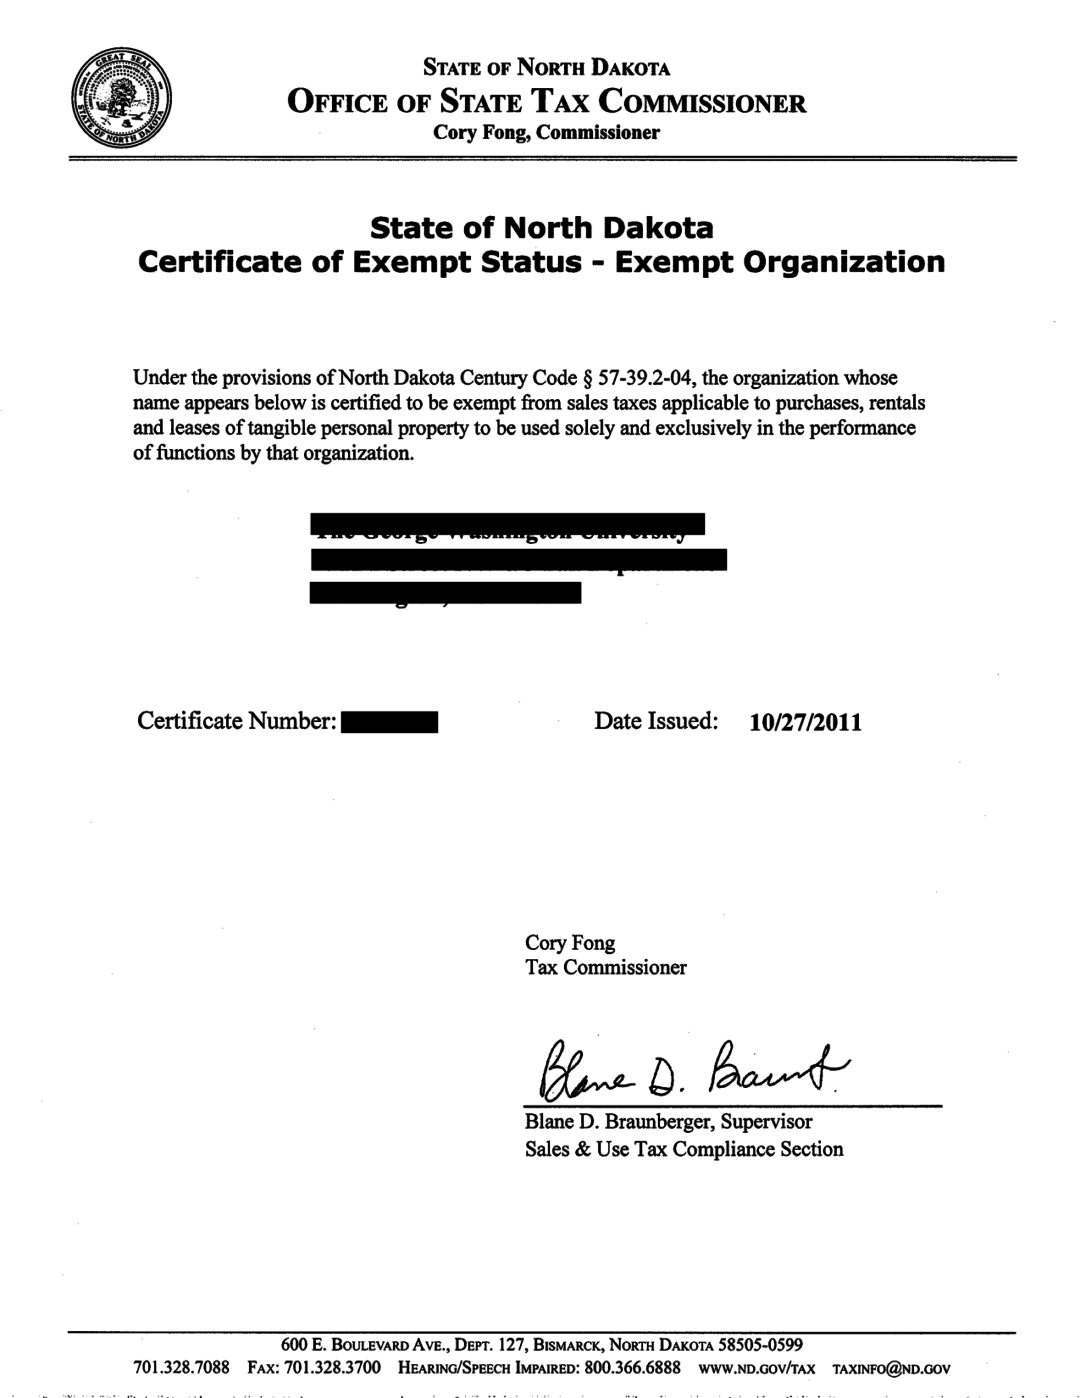 north dakota sales tax exemption